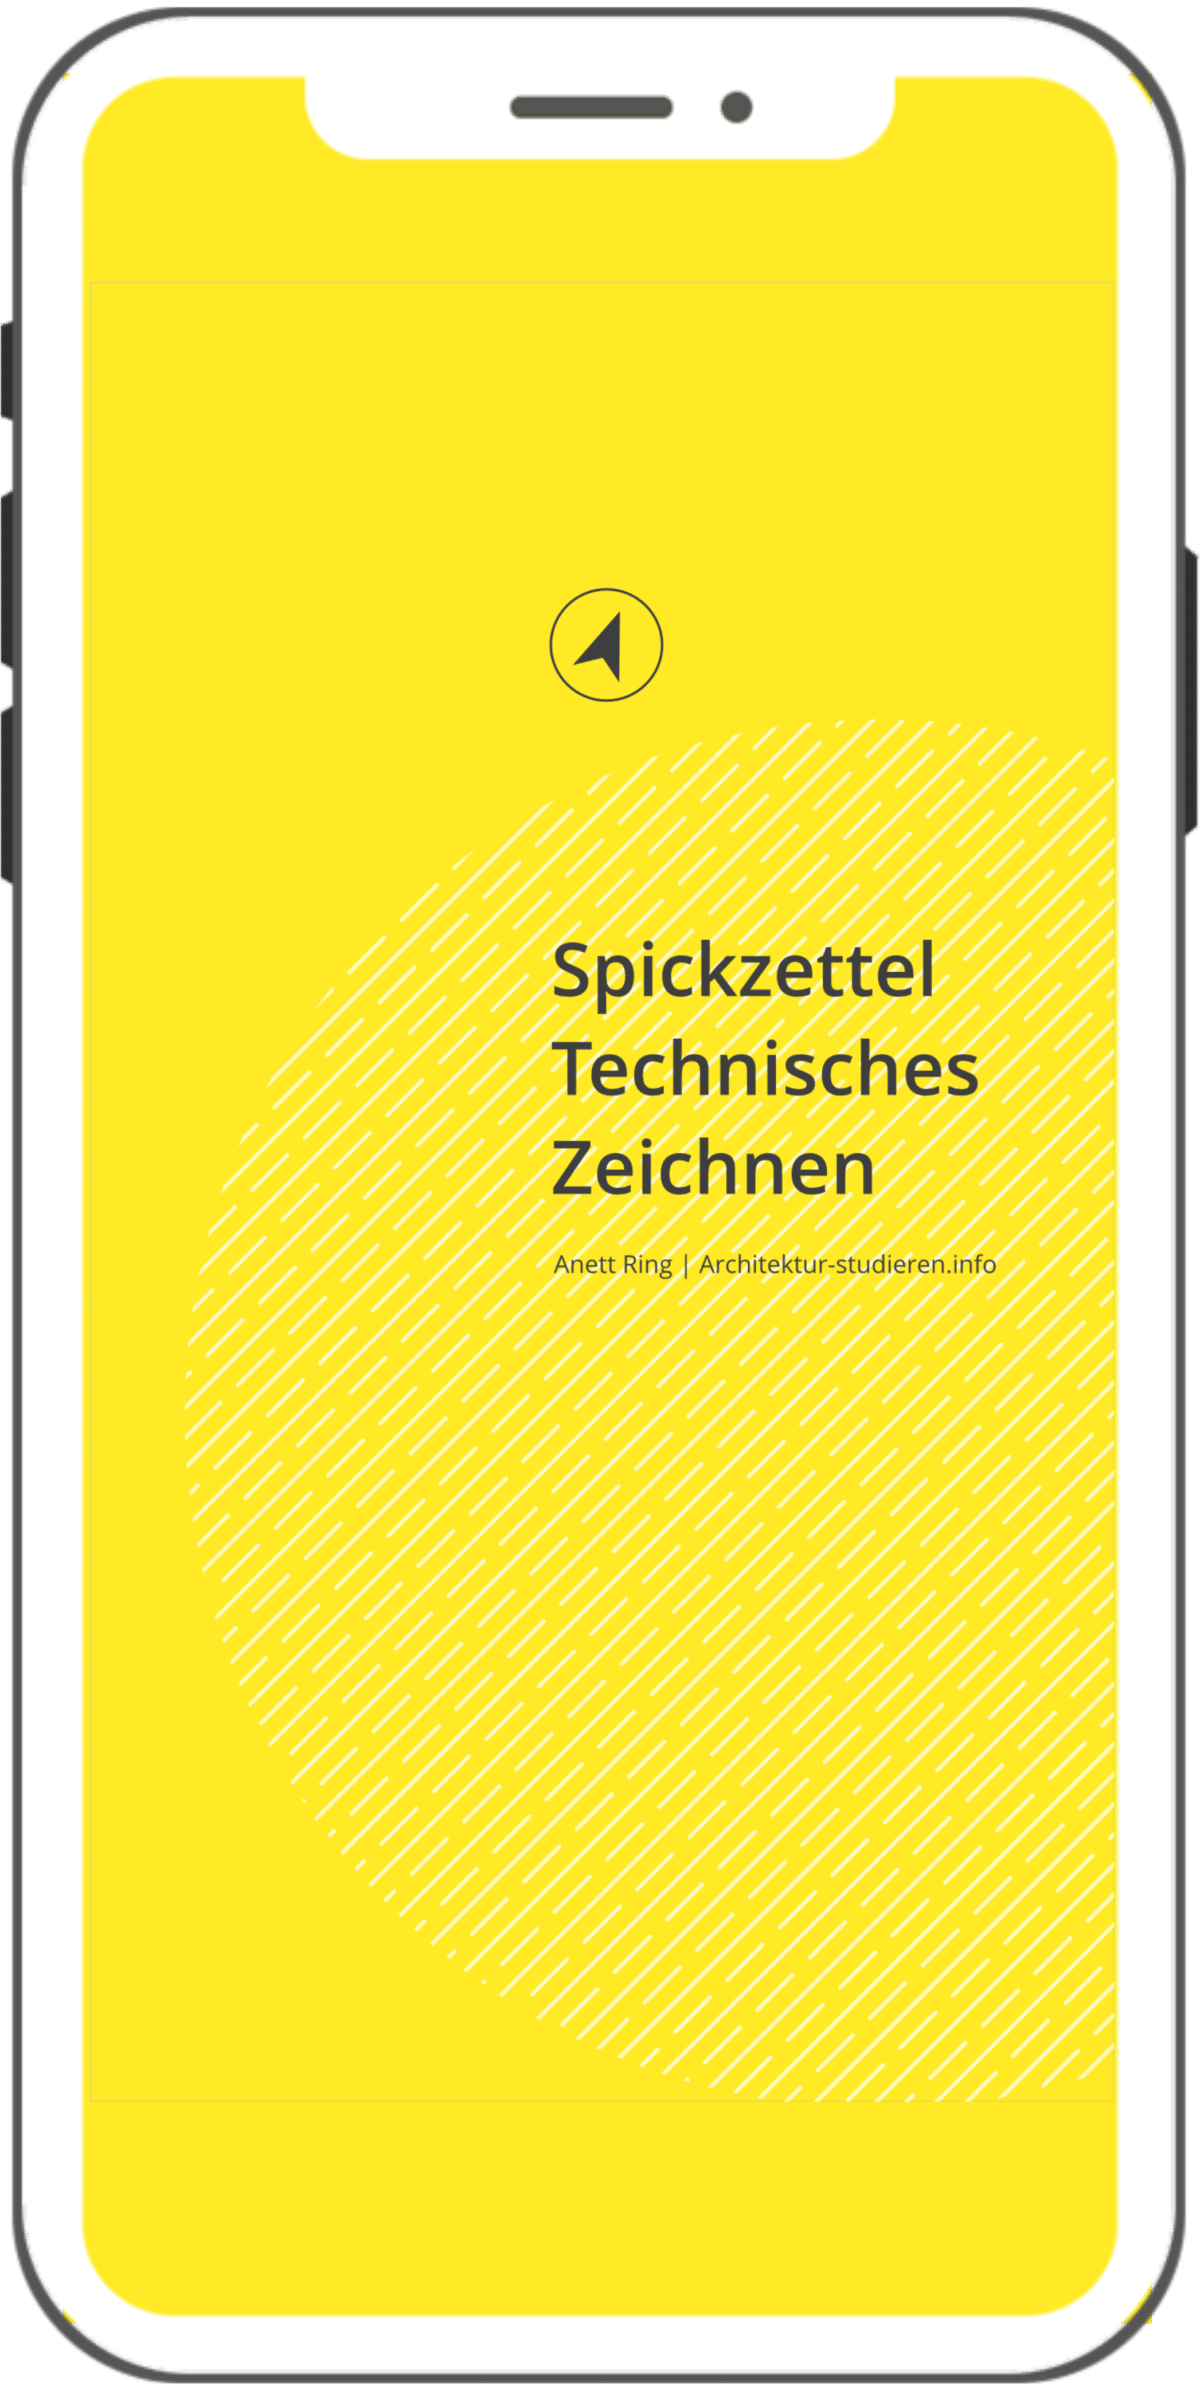 Grundlagen Technisches Zeichnen Architektur und Hochbau (PDF) | © Anett Ring, Architektur-studieren.info